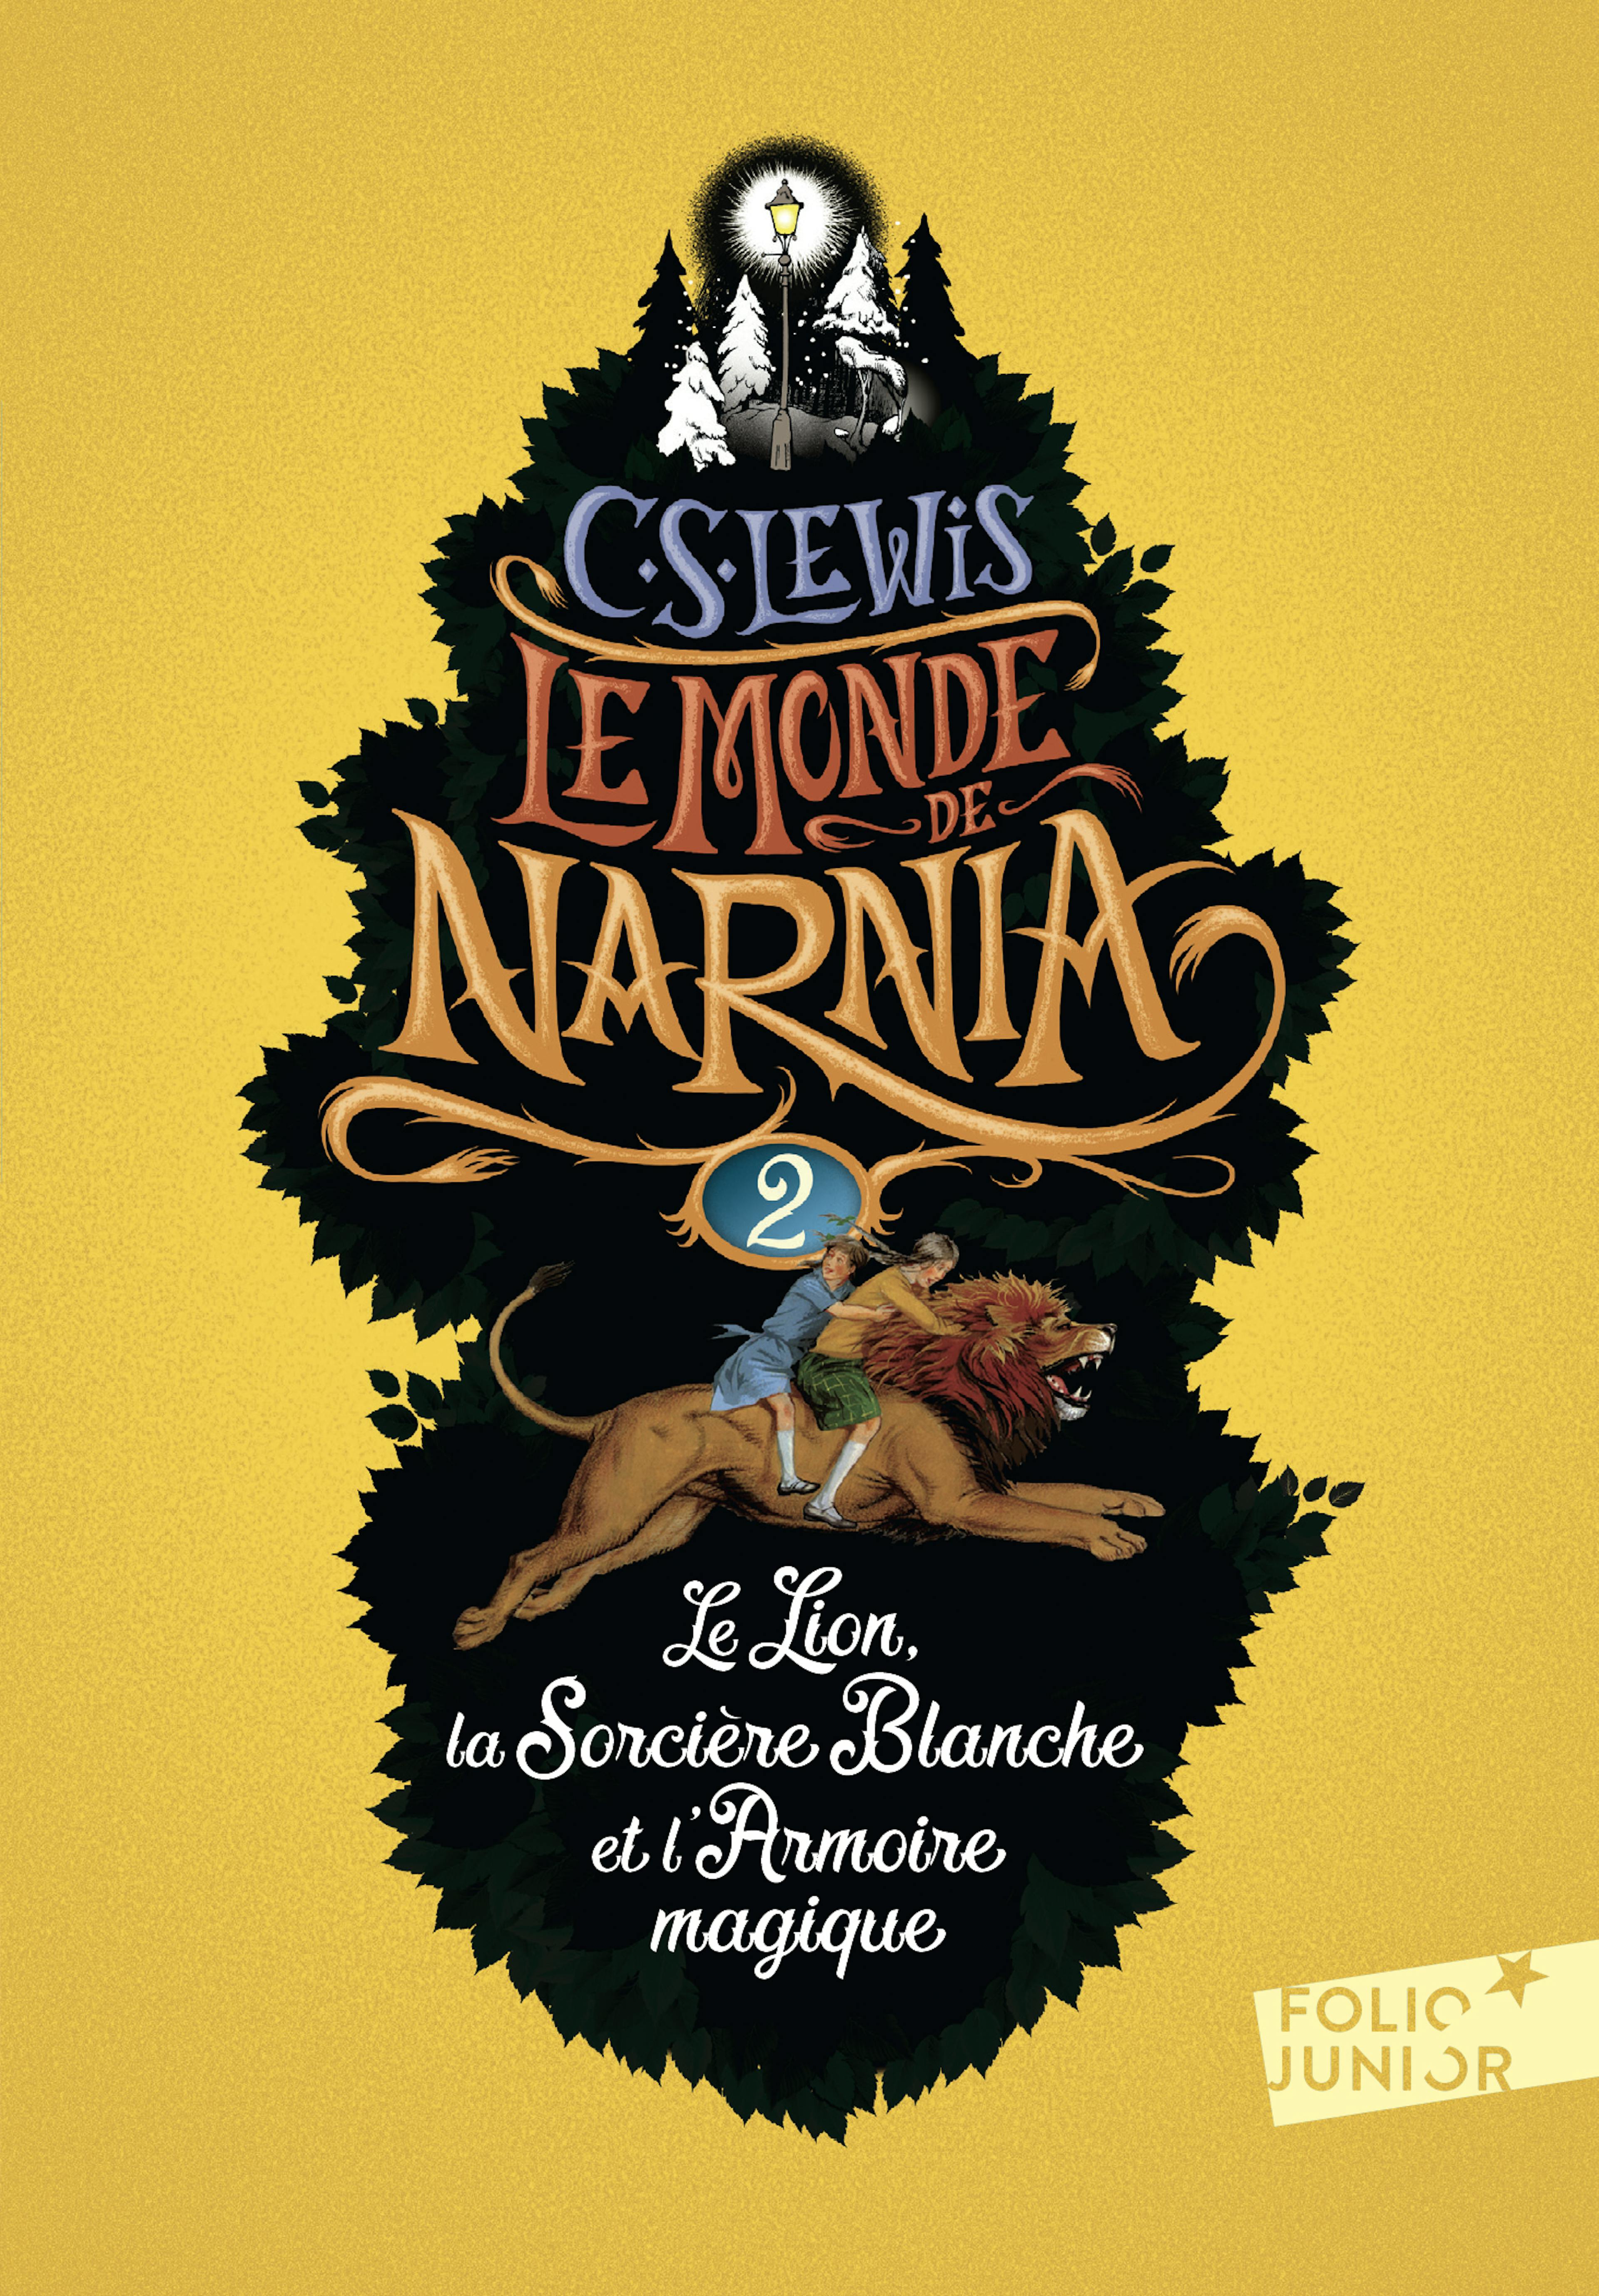 Couverture du tome 2 du Monde de Narnia de C.S. Lewis